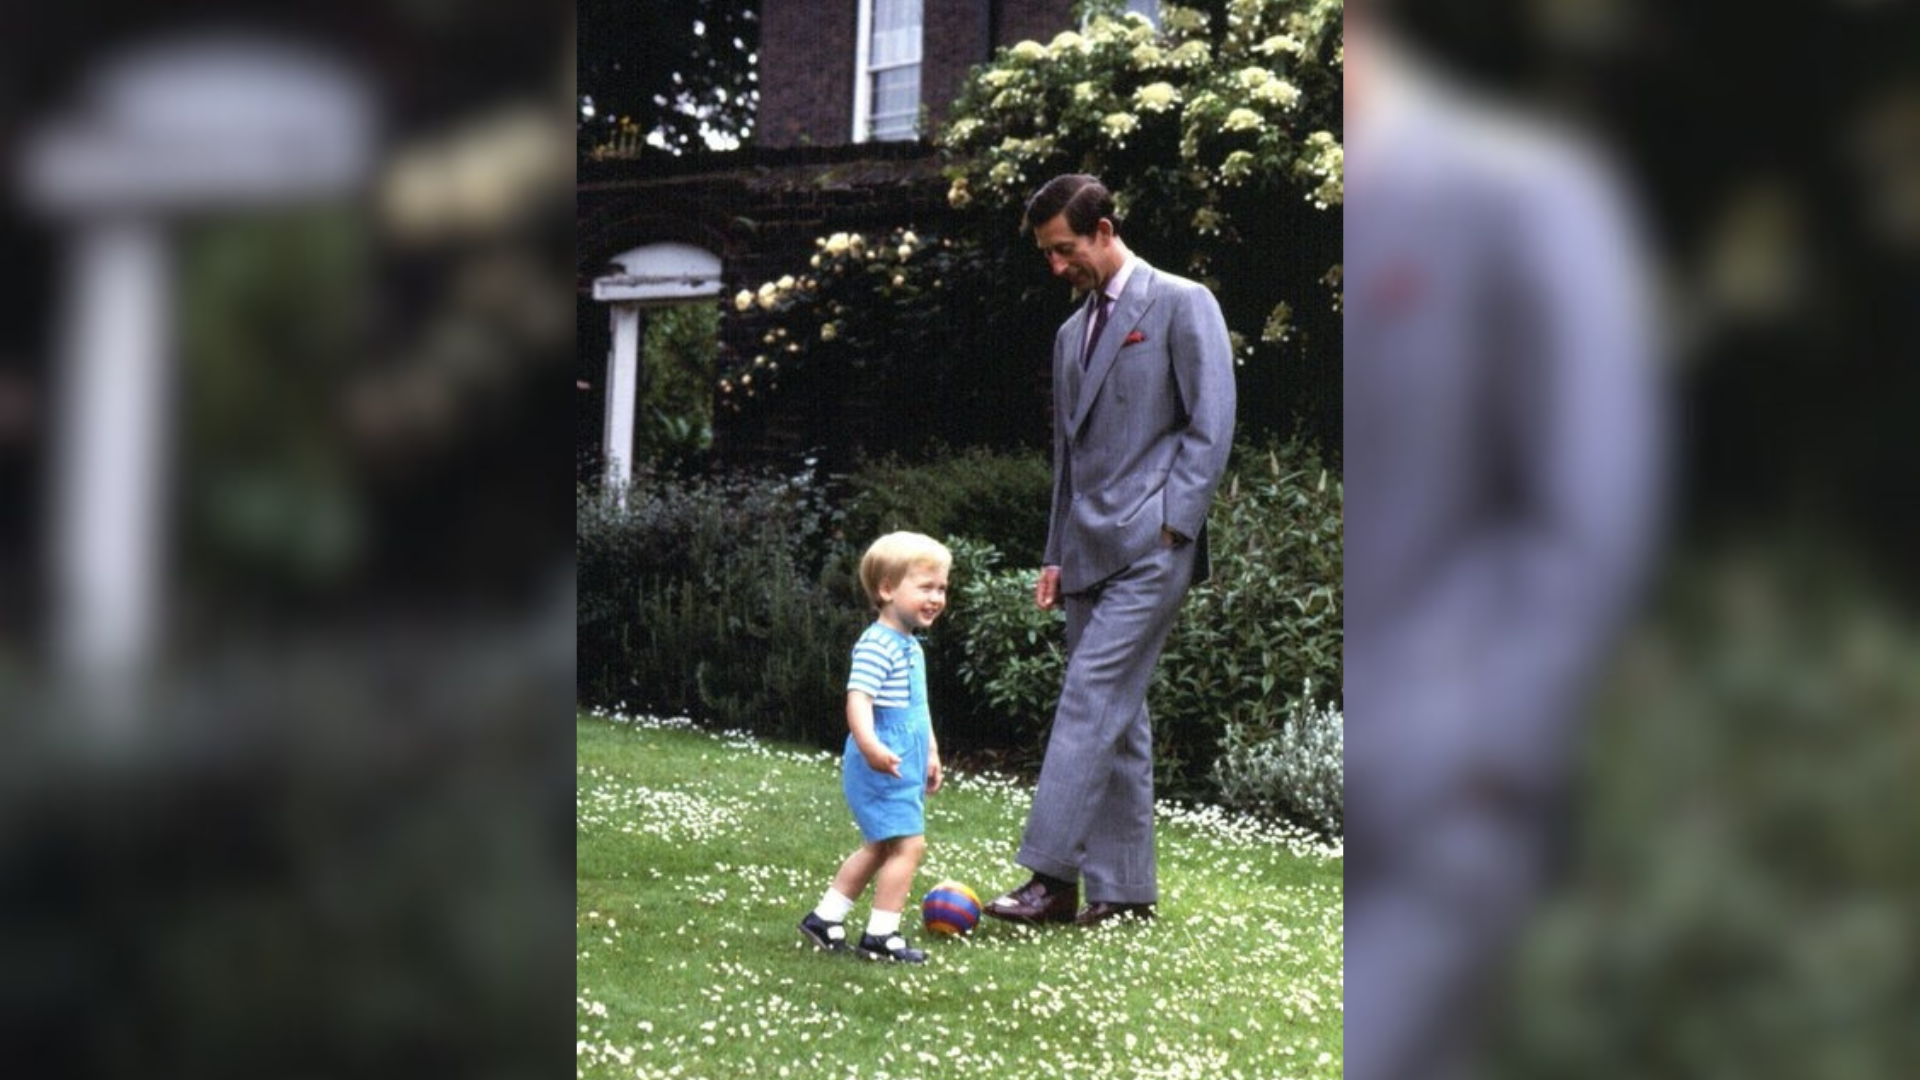 Príncipe William compartilha foto de infância com rei Charles no Dia dos Pais